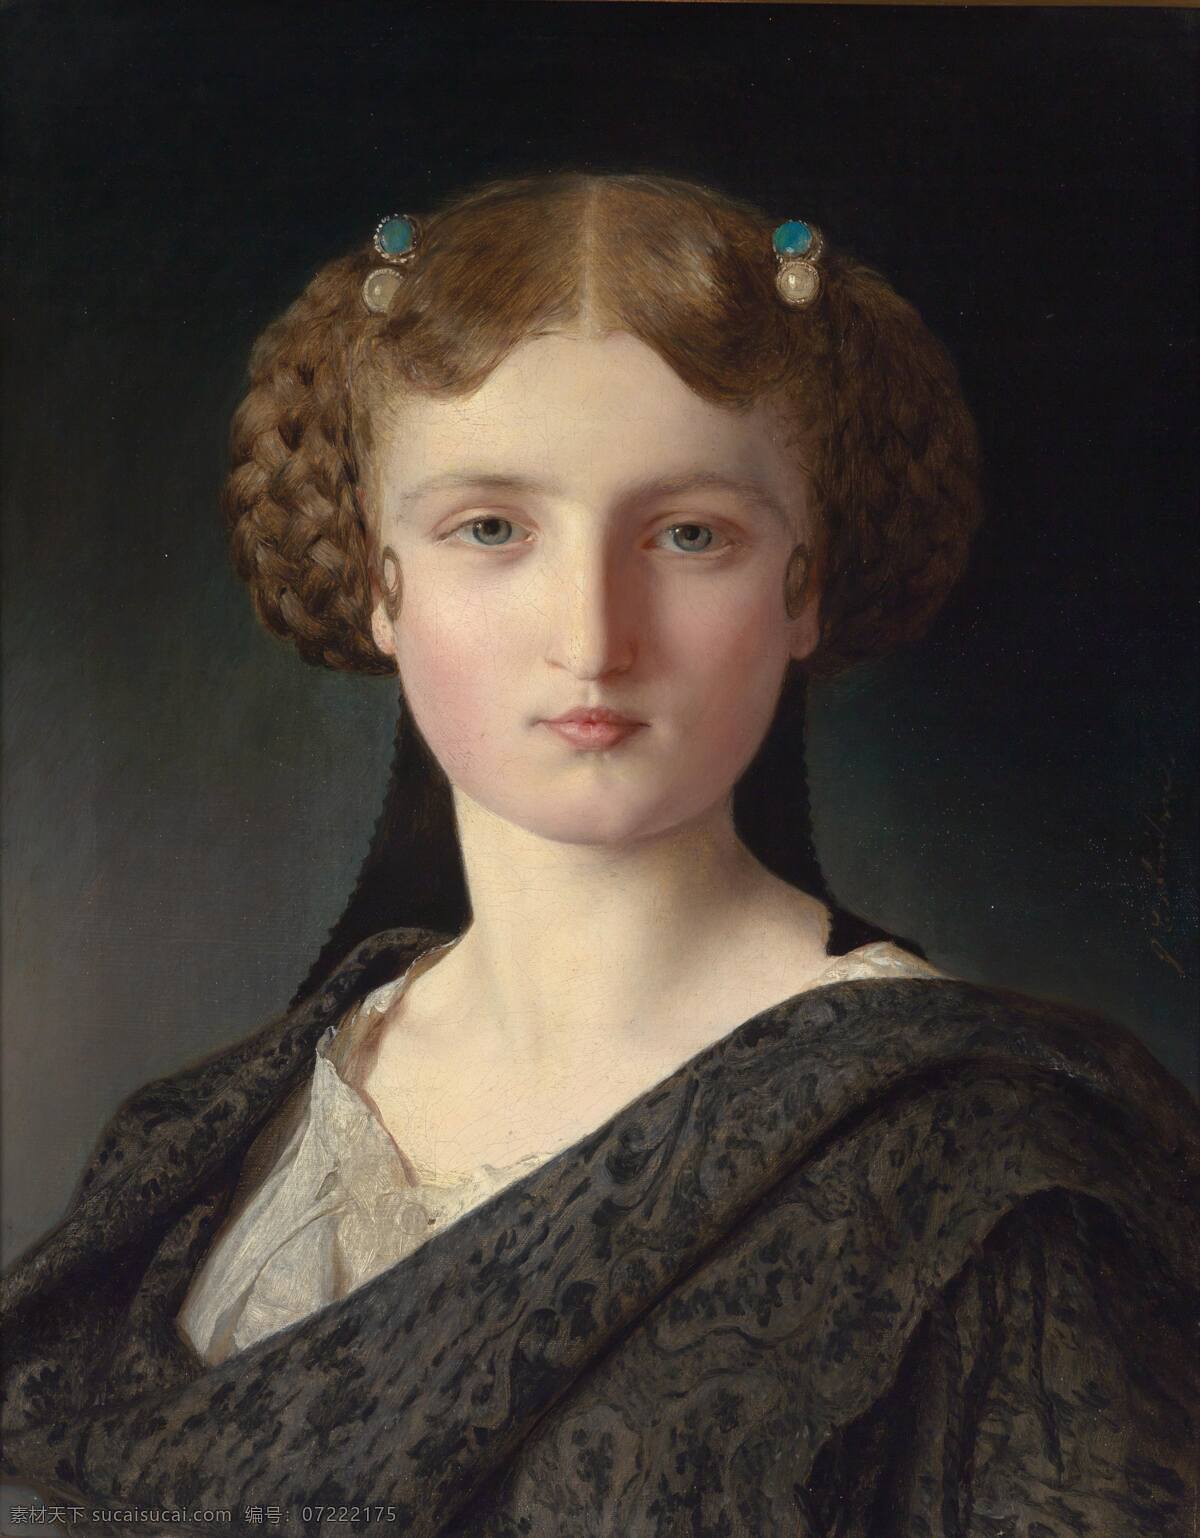 施特 罗 布尔 小姐 爱丽丝183 约翰瑞特作品 德国画家 年轻姑娘 半身肖像 宝石发卡 时髦发型 古典油画 油画 文化艺术 绘画书法